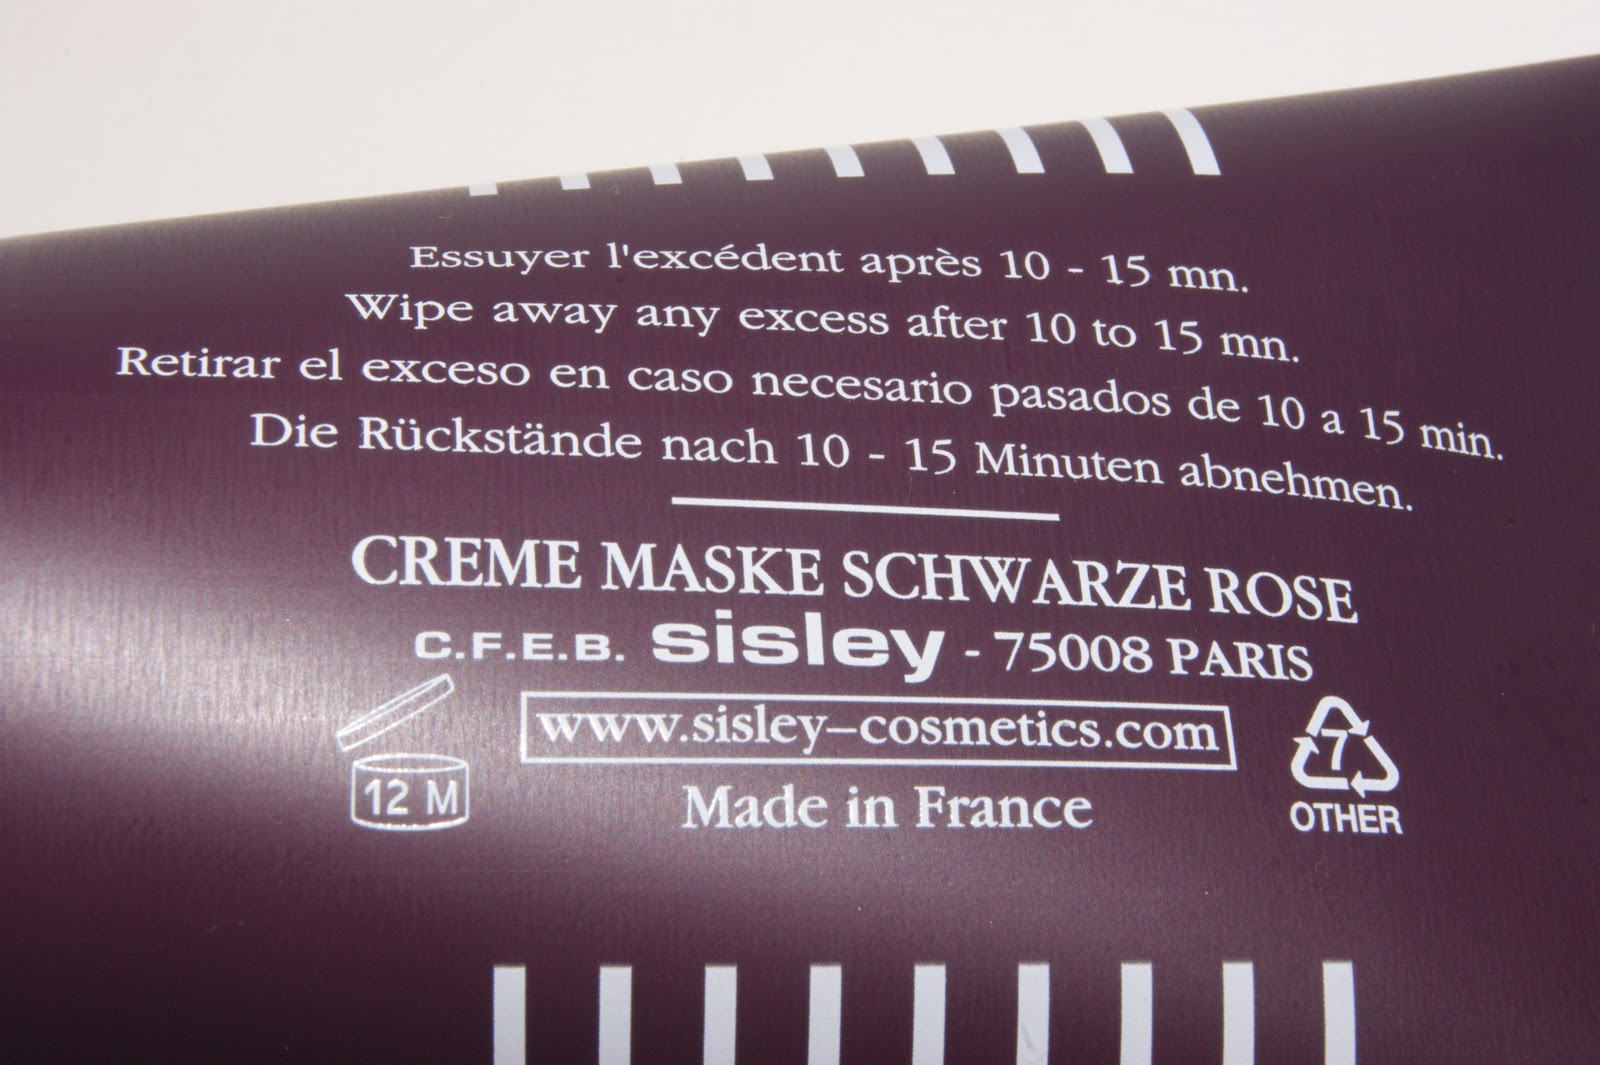 Cream The Girl Sisley | Mask Black Sunday Rose Review